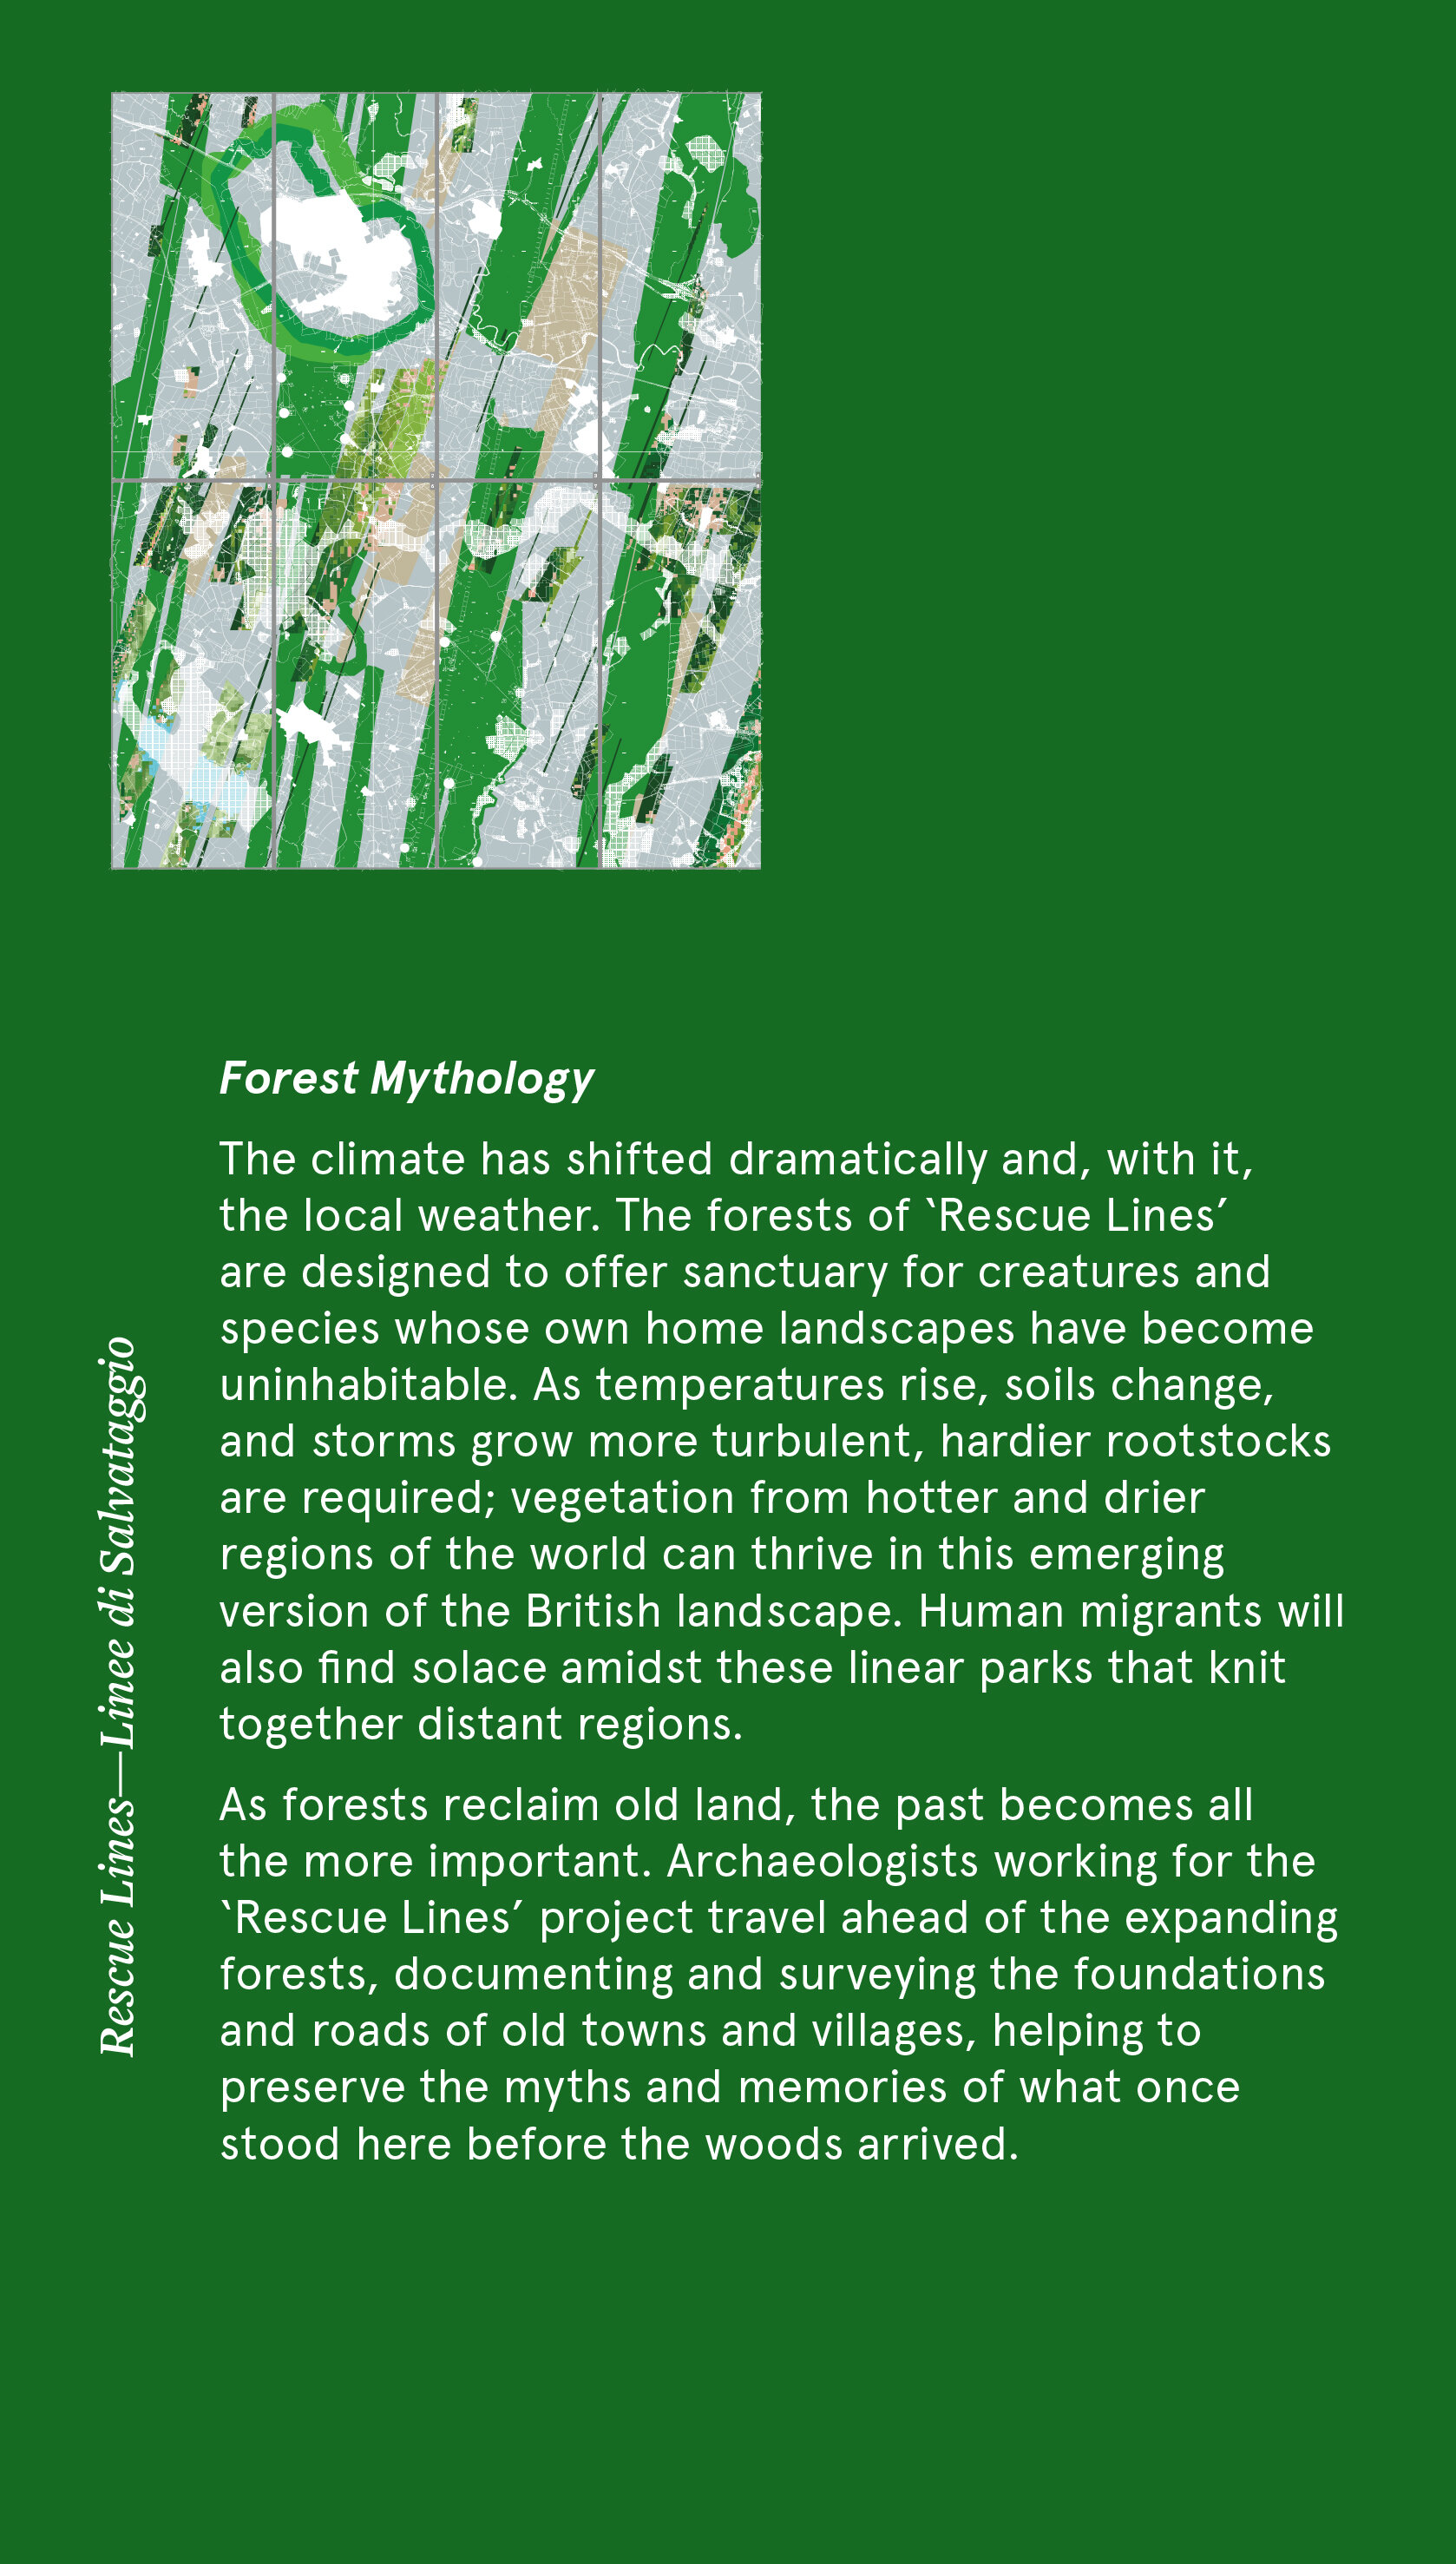 ForestMythology.jpg